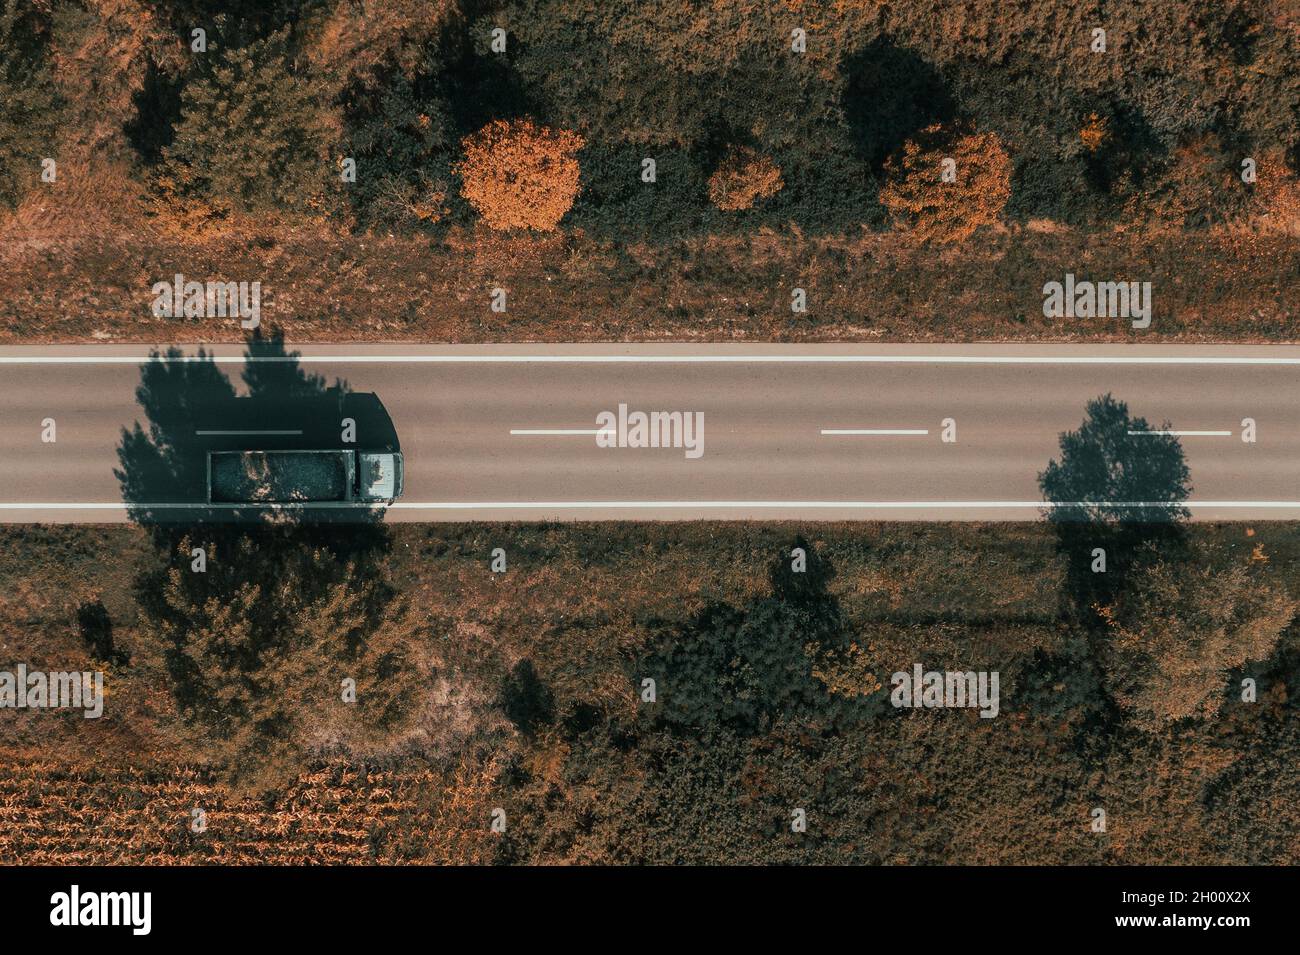 Photographie aérienne de camion avec wagon plein de pierre de gravier, photographie de drone de haut en bas du véhicule sur la route Banque D'Images